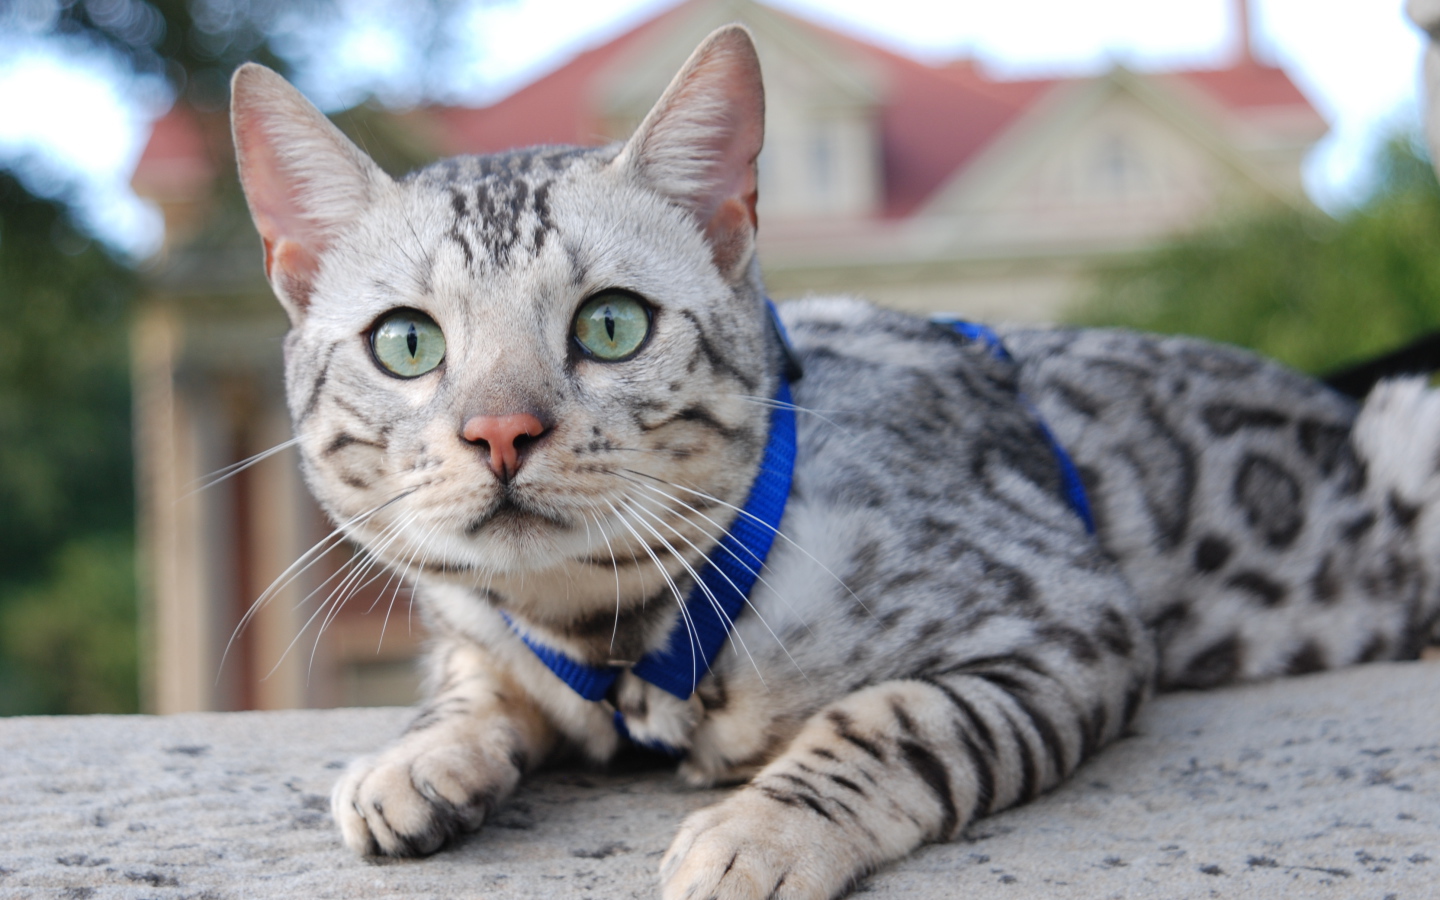 Серебристый бенгальский кот во дворе дома